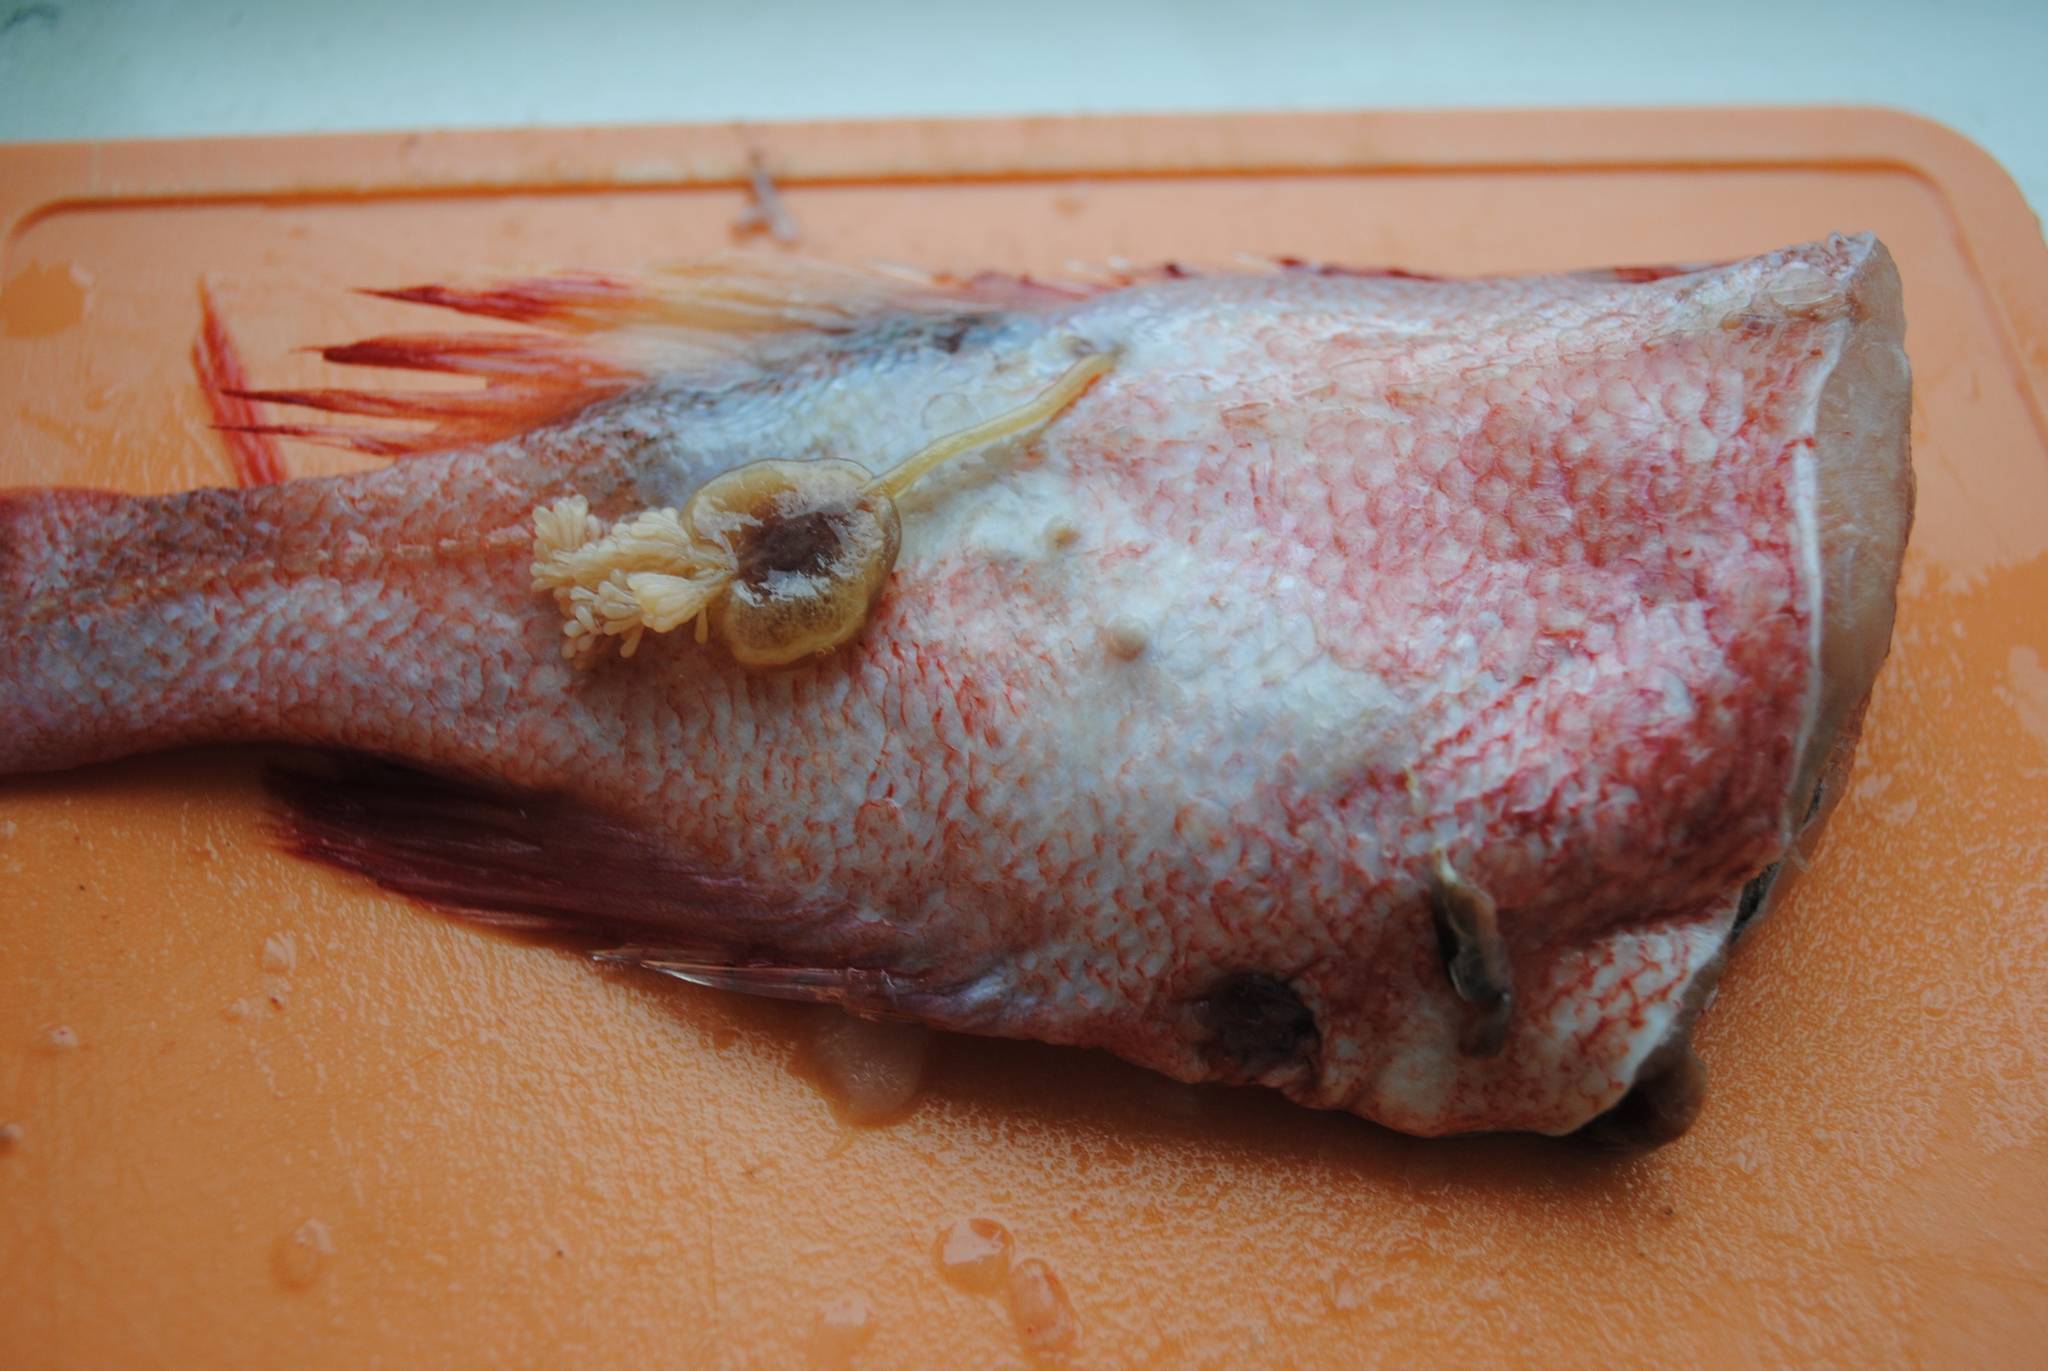 Глисты в рыбе – какие бывают, как выглядят и можно ли есть?